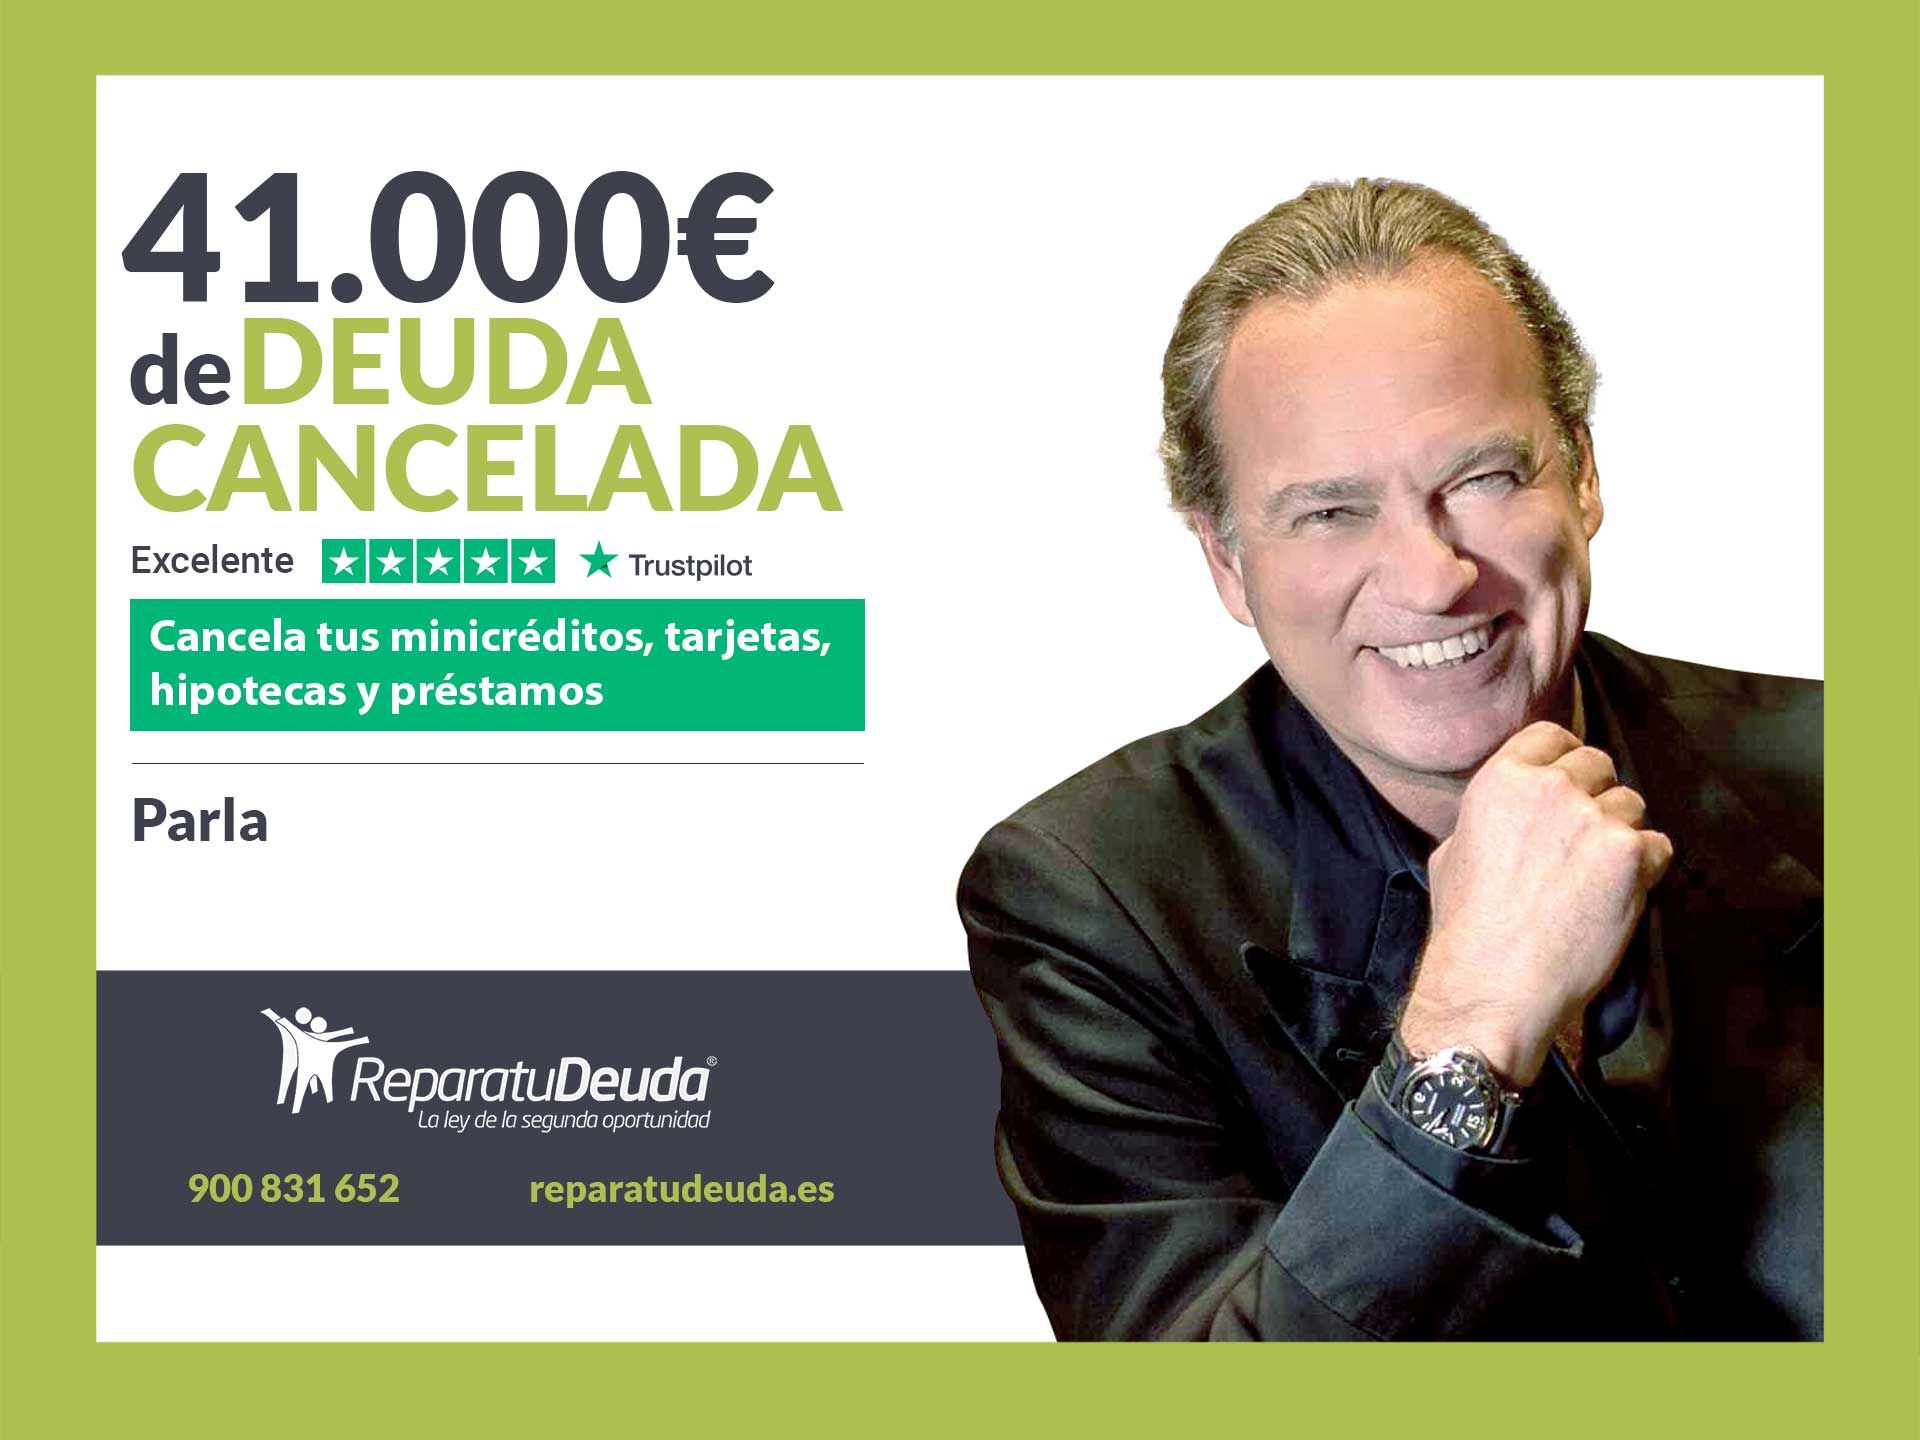 Repara tu Deuda Abogados cancela 41.000? en Parla (Madrid) con la Ley de Segunda Oportunidad